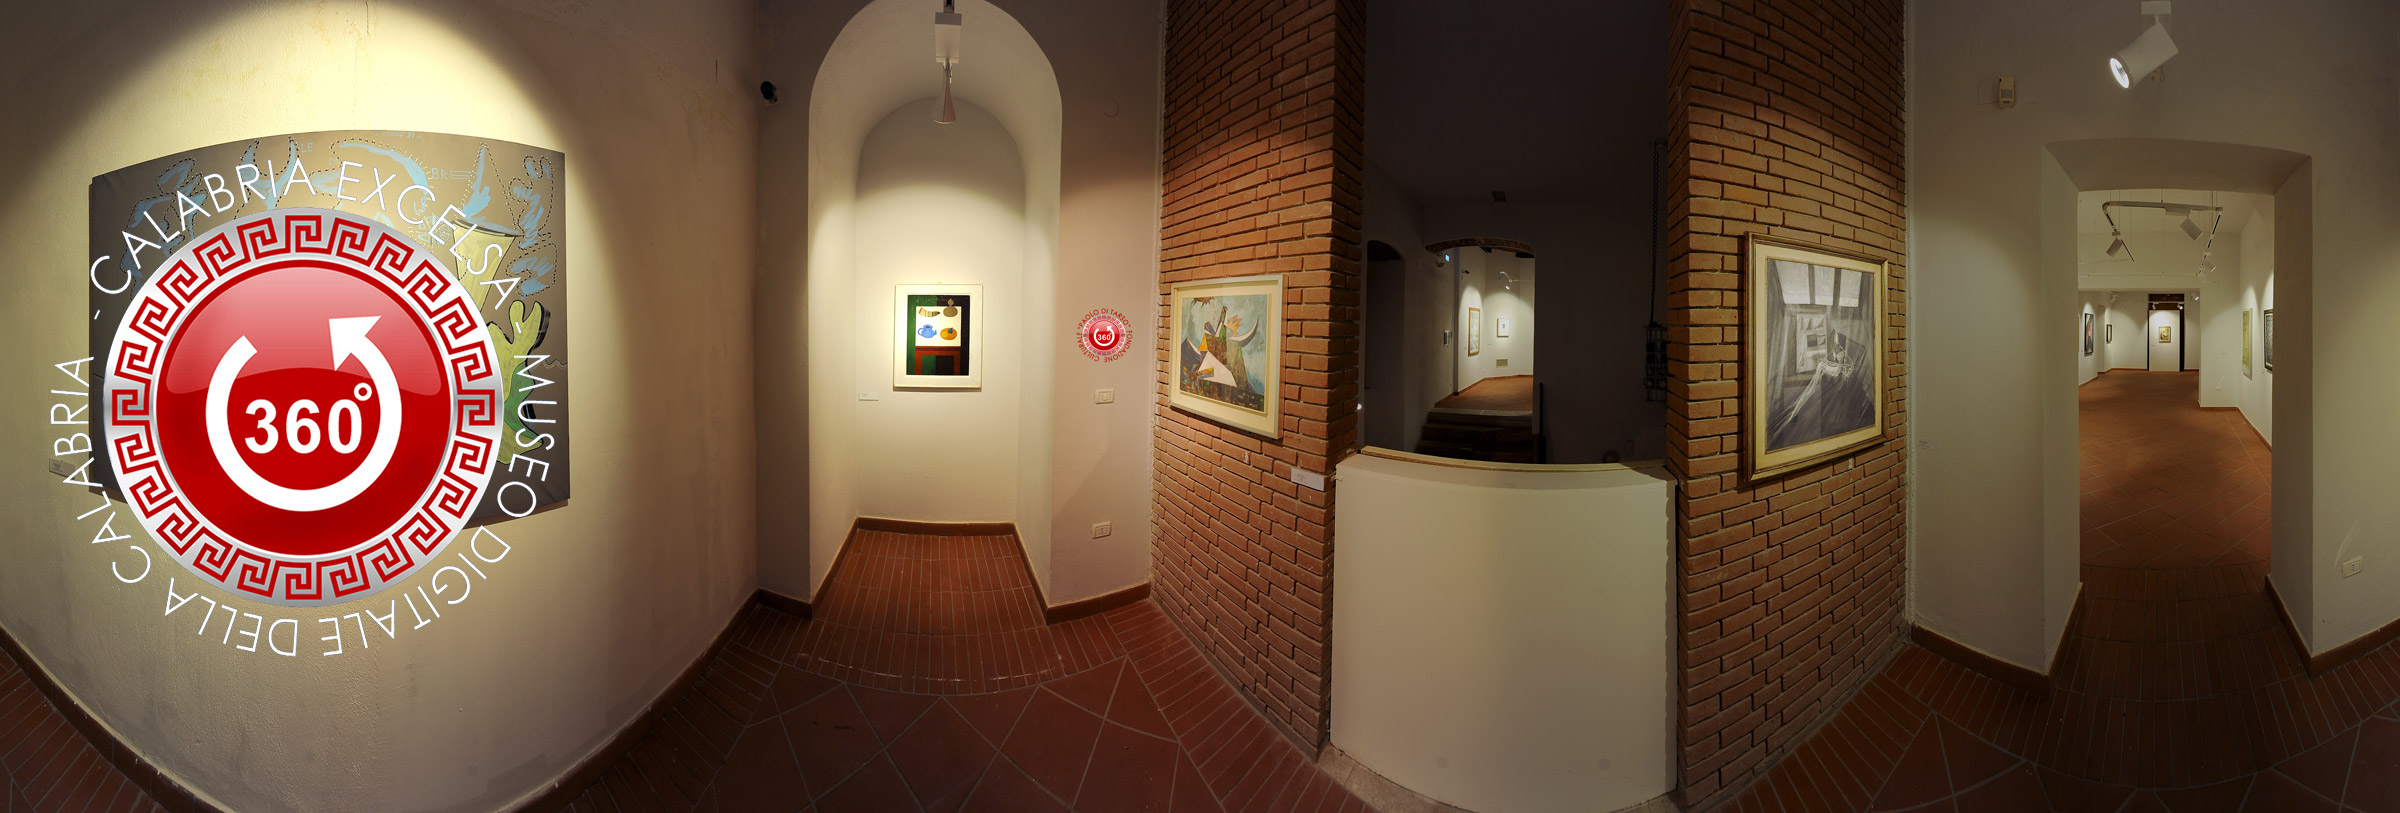 Museo digitale della Calabria: MAON Museo d'Arte Contemporanea di rende dell'Ottocento e Novecento